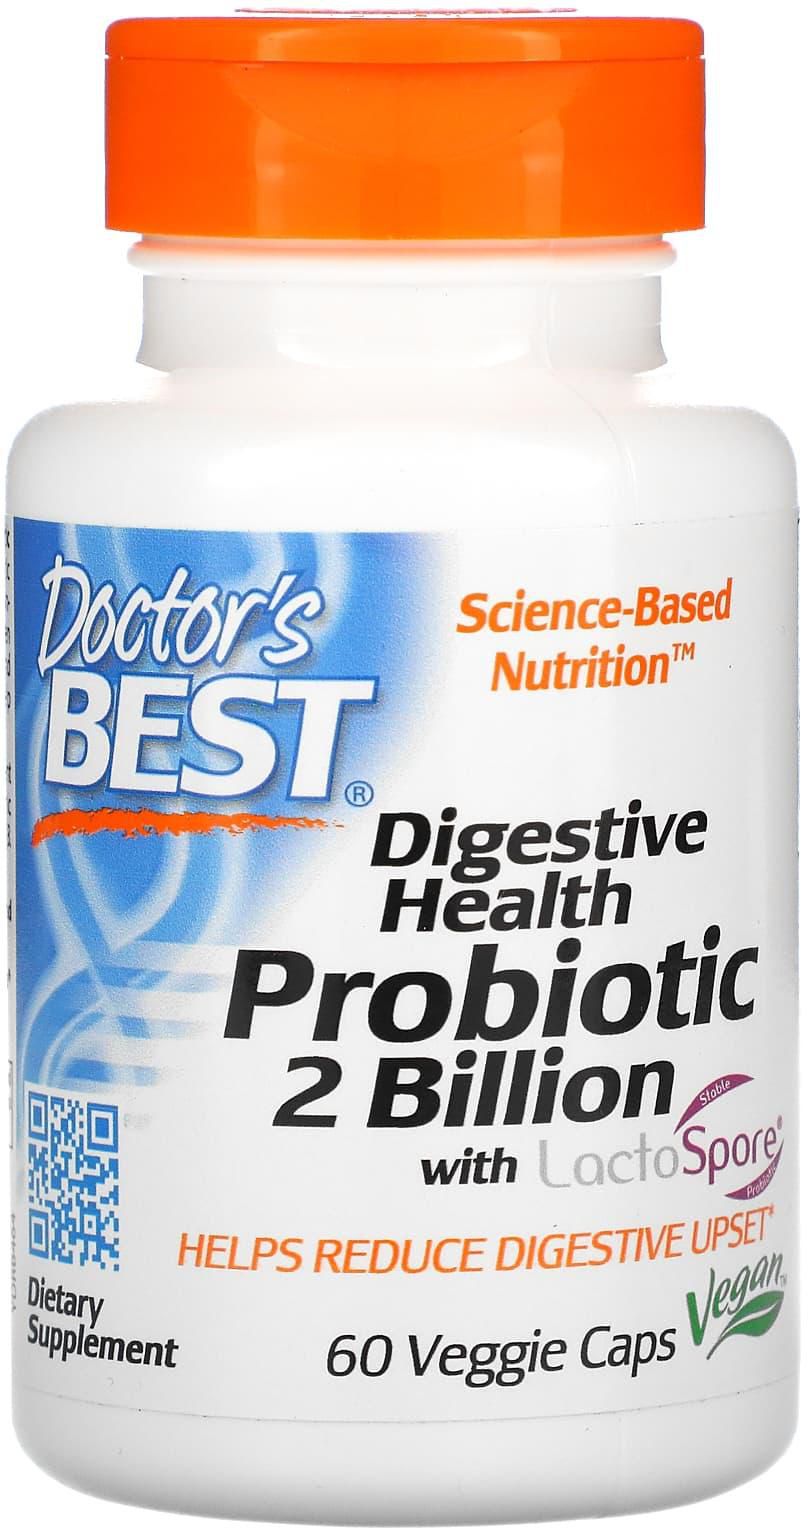 دكتورز بيست‏, صحة الجهاز الهضمي، بروبيوتيك مع LactoSpore‏، 2 مليار، 60 كبسولة نباتية